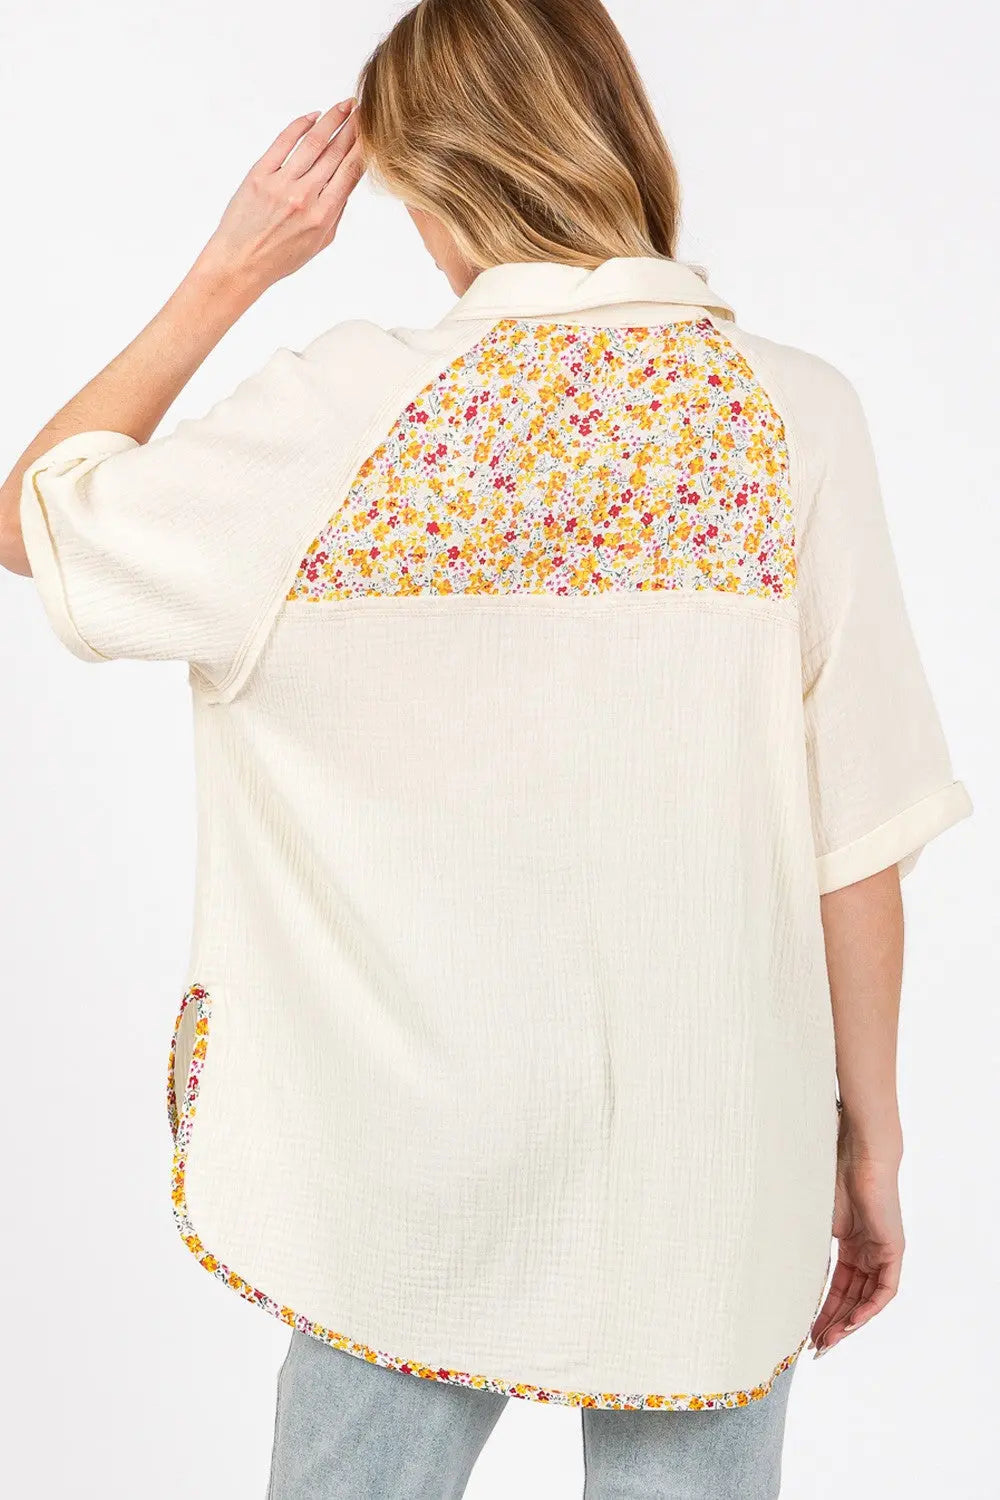 SAGE + FIG Full Size Floral Detail Button Up Short Sleeve Shirt Trendsi